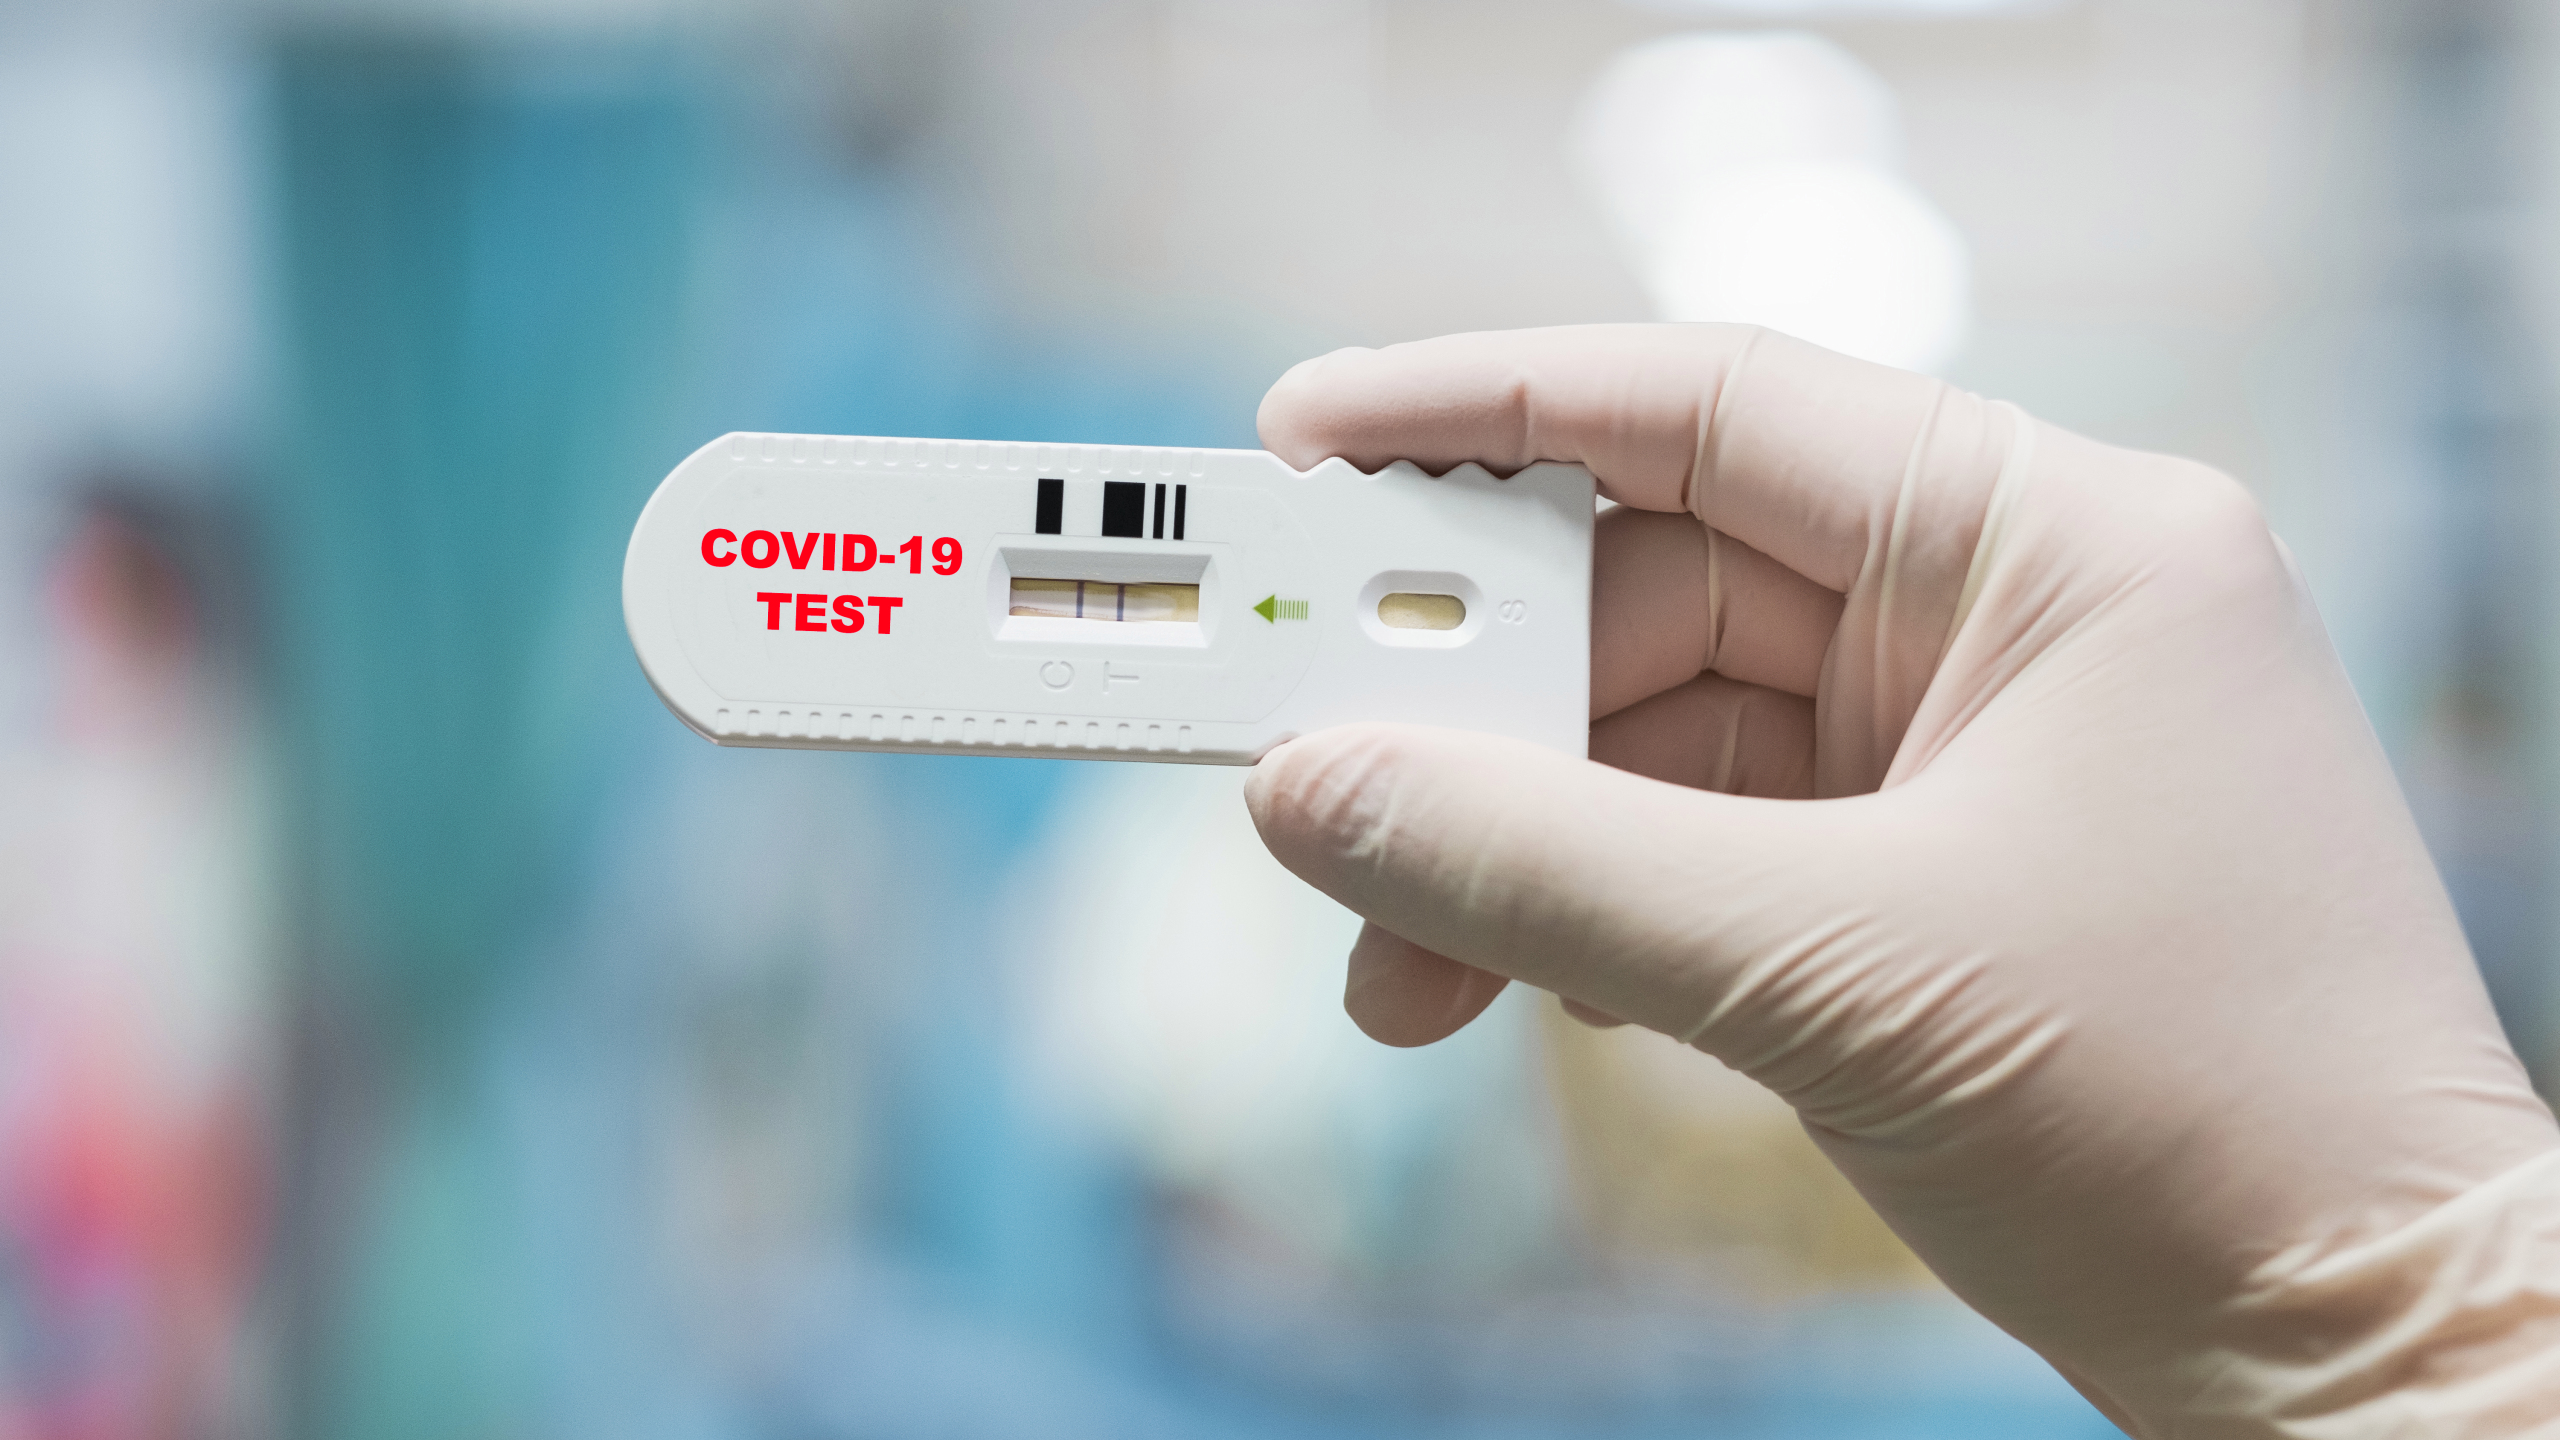 51 new coronavirus cases registered as vaccine arrives